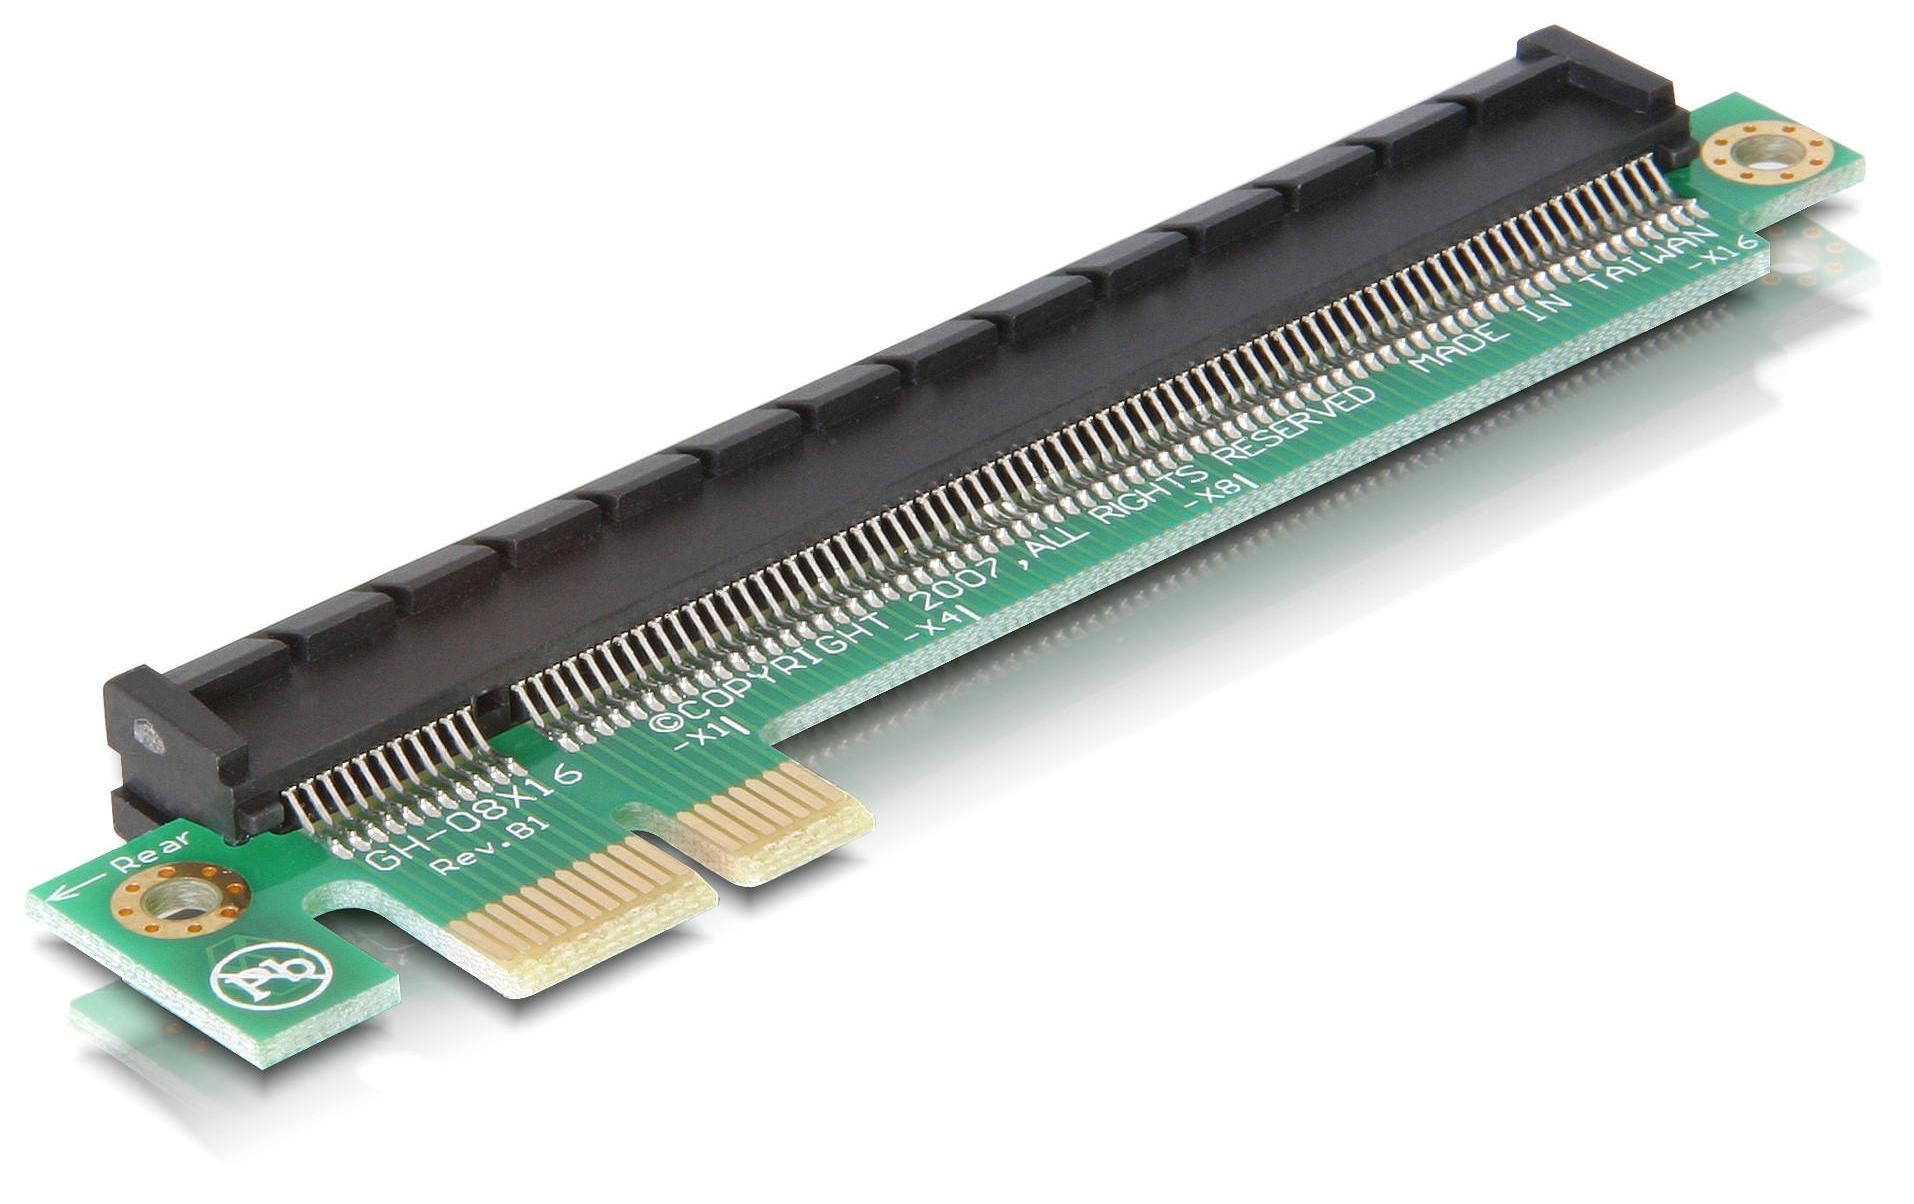 Delock PCI-E Riser Karte x1 auf x16 Verlängerung